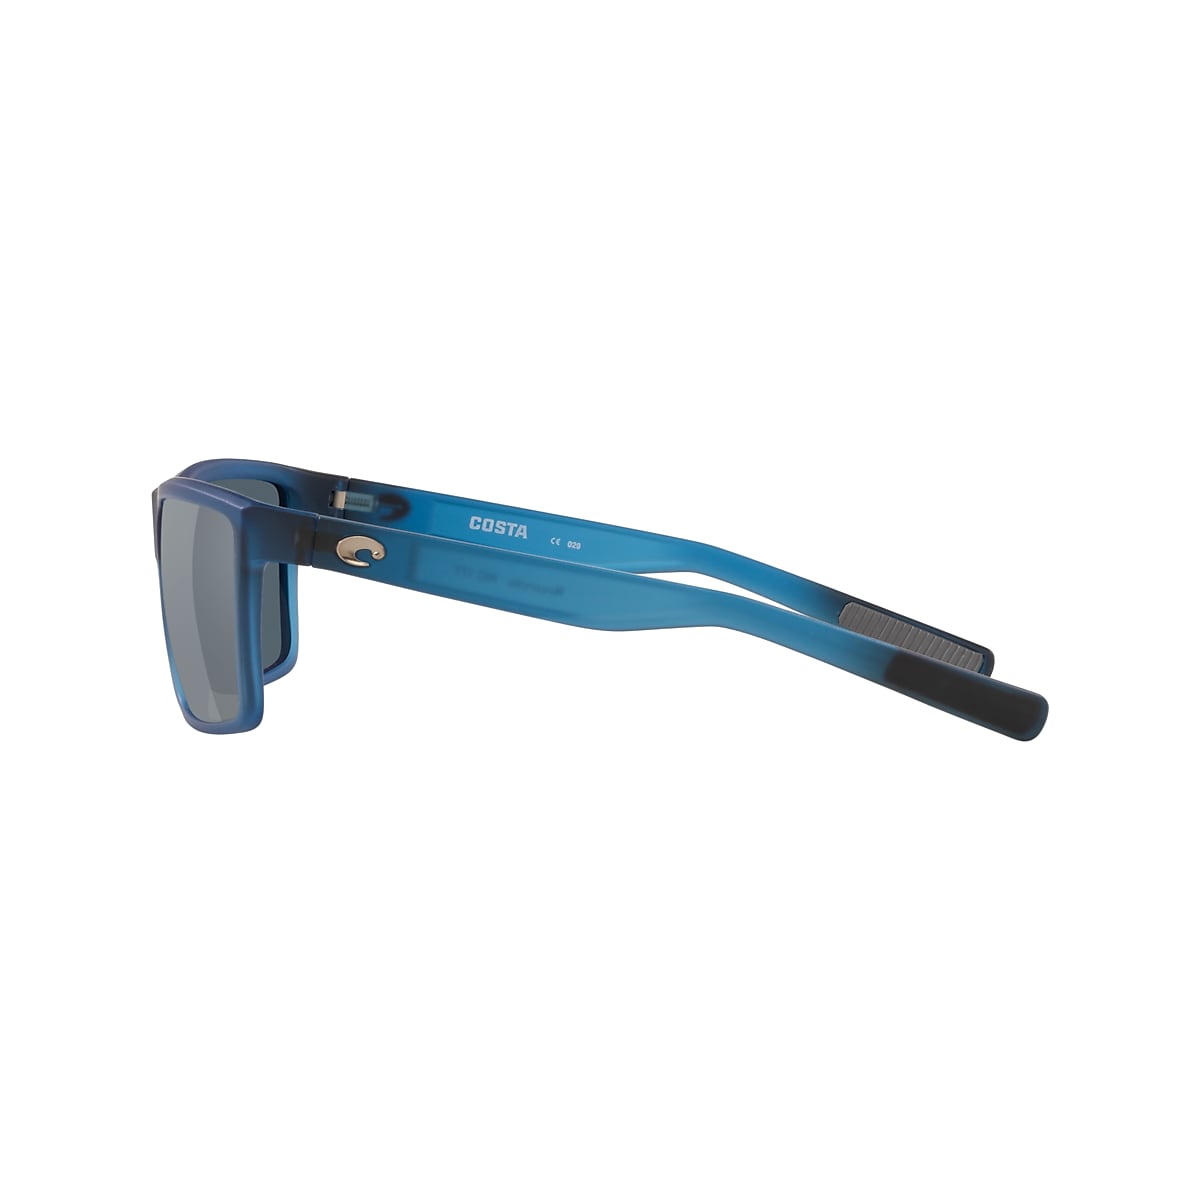 COSTA DEL MAR atlantic blue/silver mirror RINCONCITO polarized 580P  sunglasses